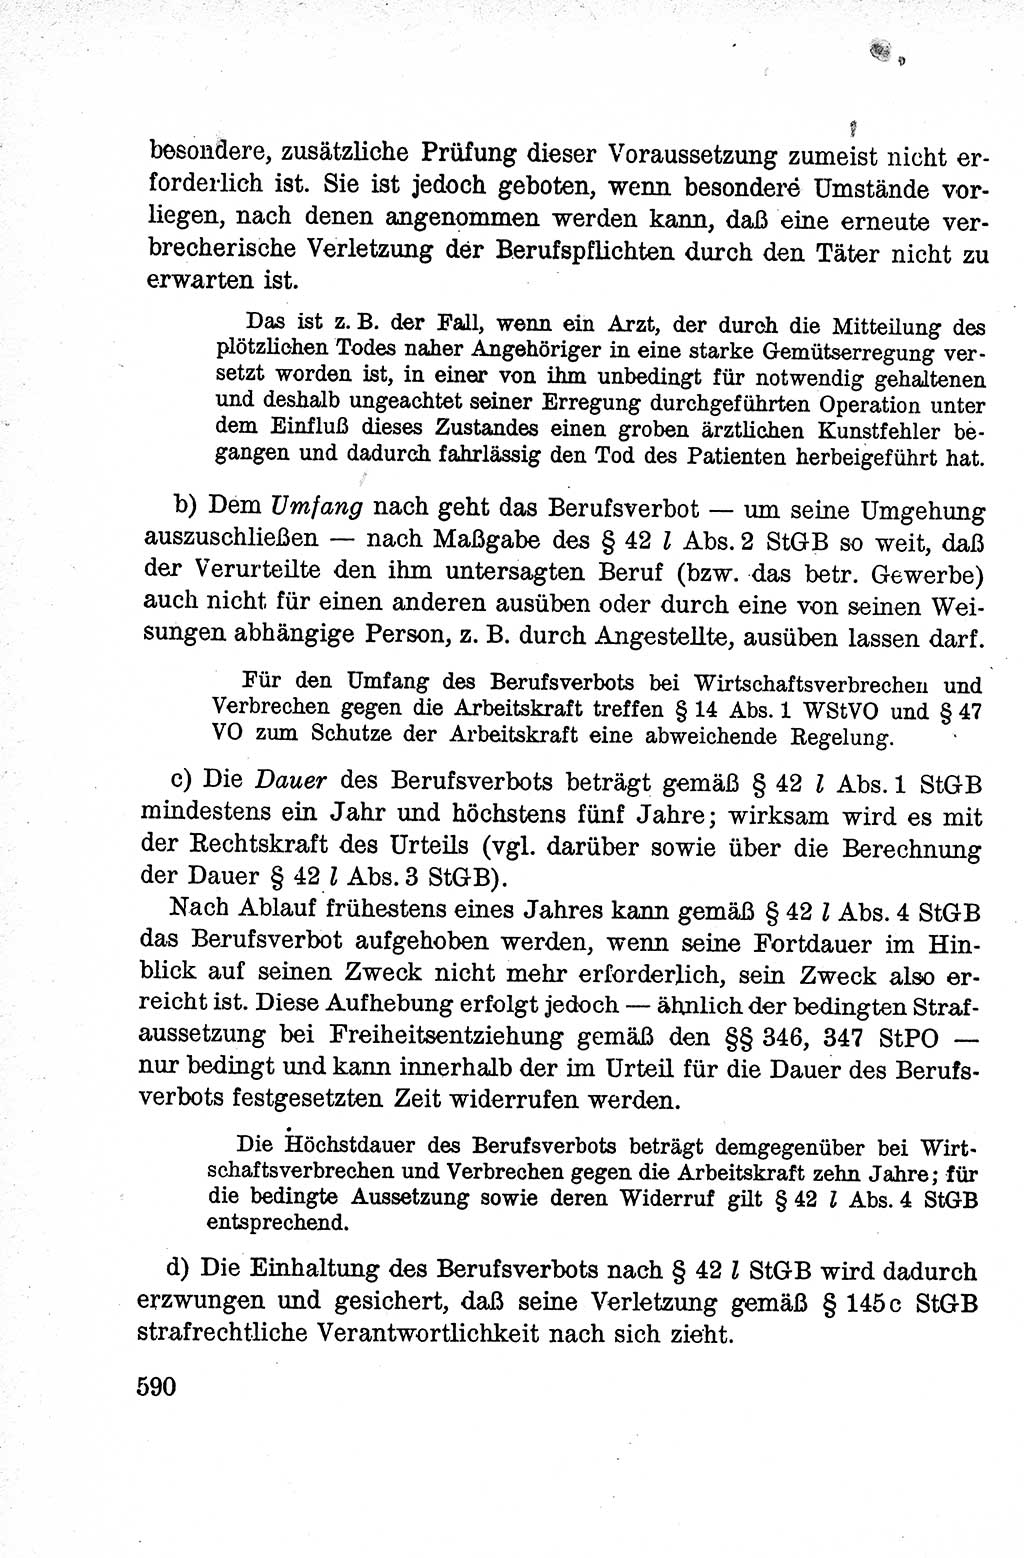 Lehrbuch des Strafrechts der Deutschen Demokratischen Republik (DDR), Allgemeiner Teil 1959, Seite 590 (Lb. Strafr. DDR AT 1959, S. 590)